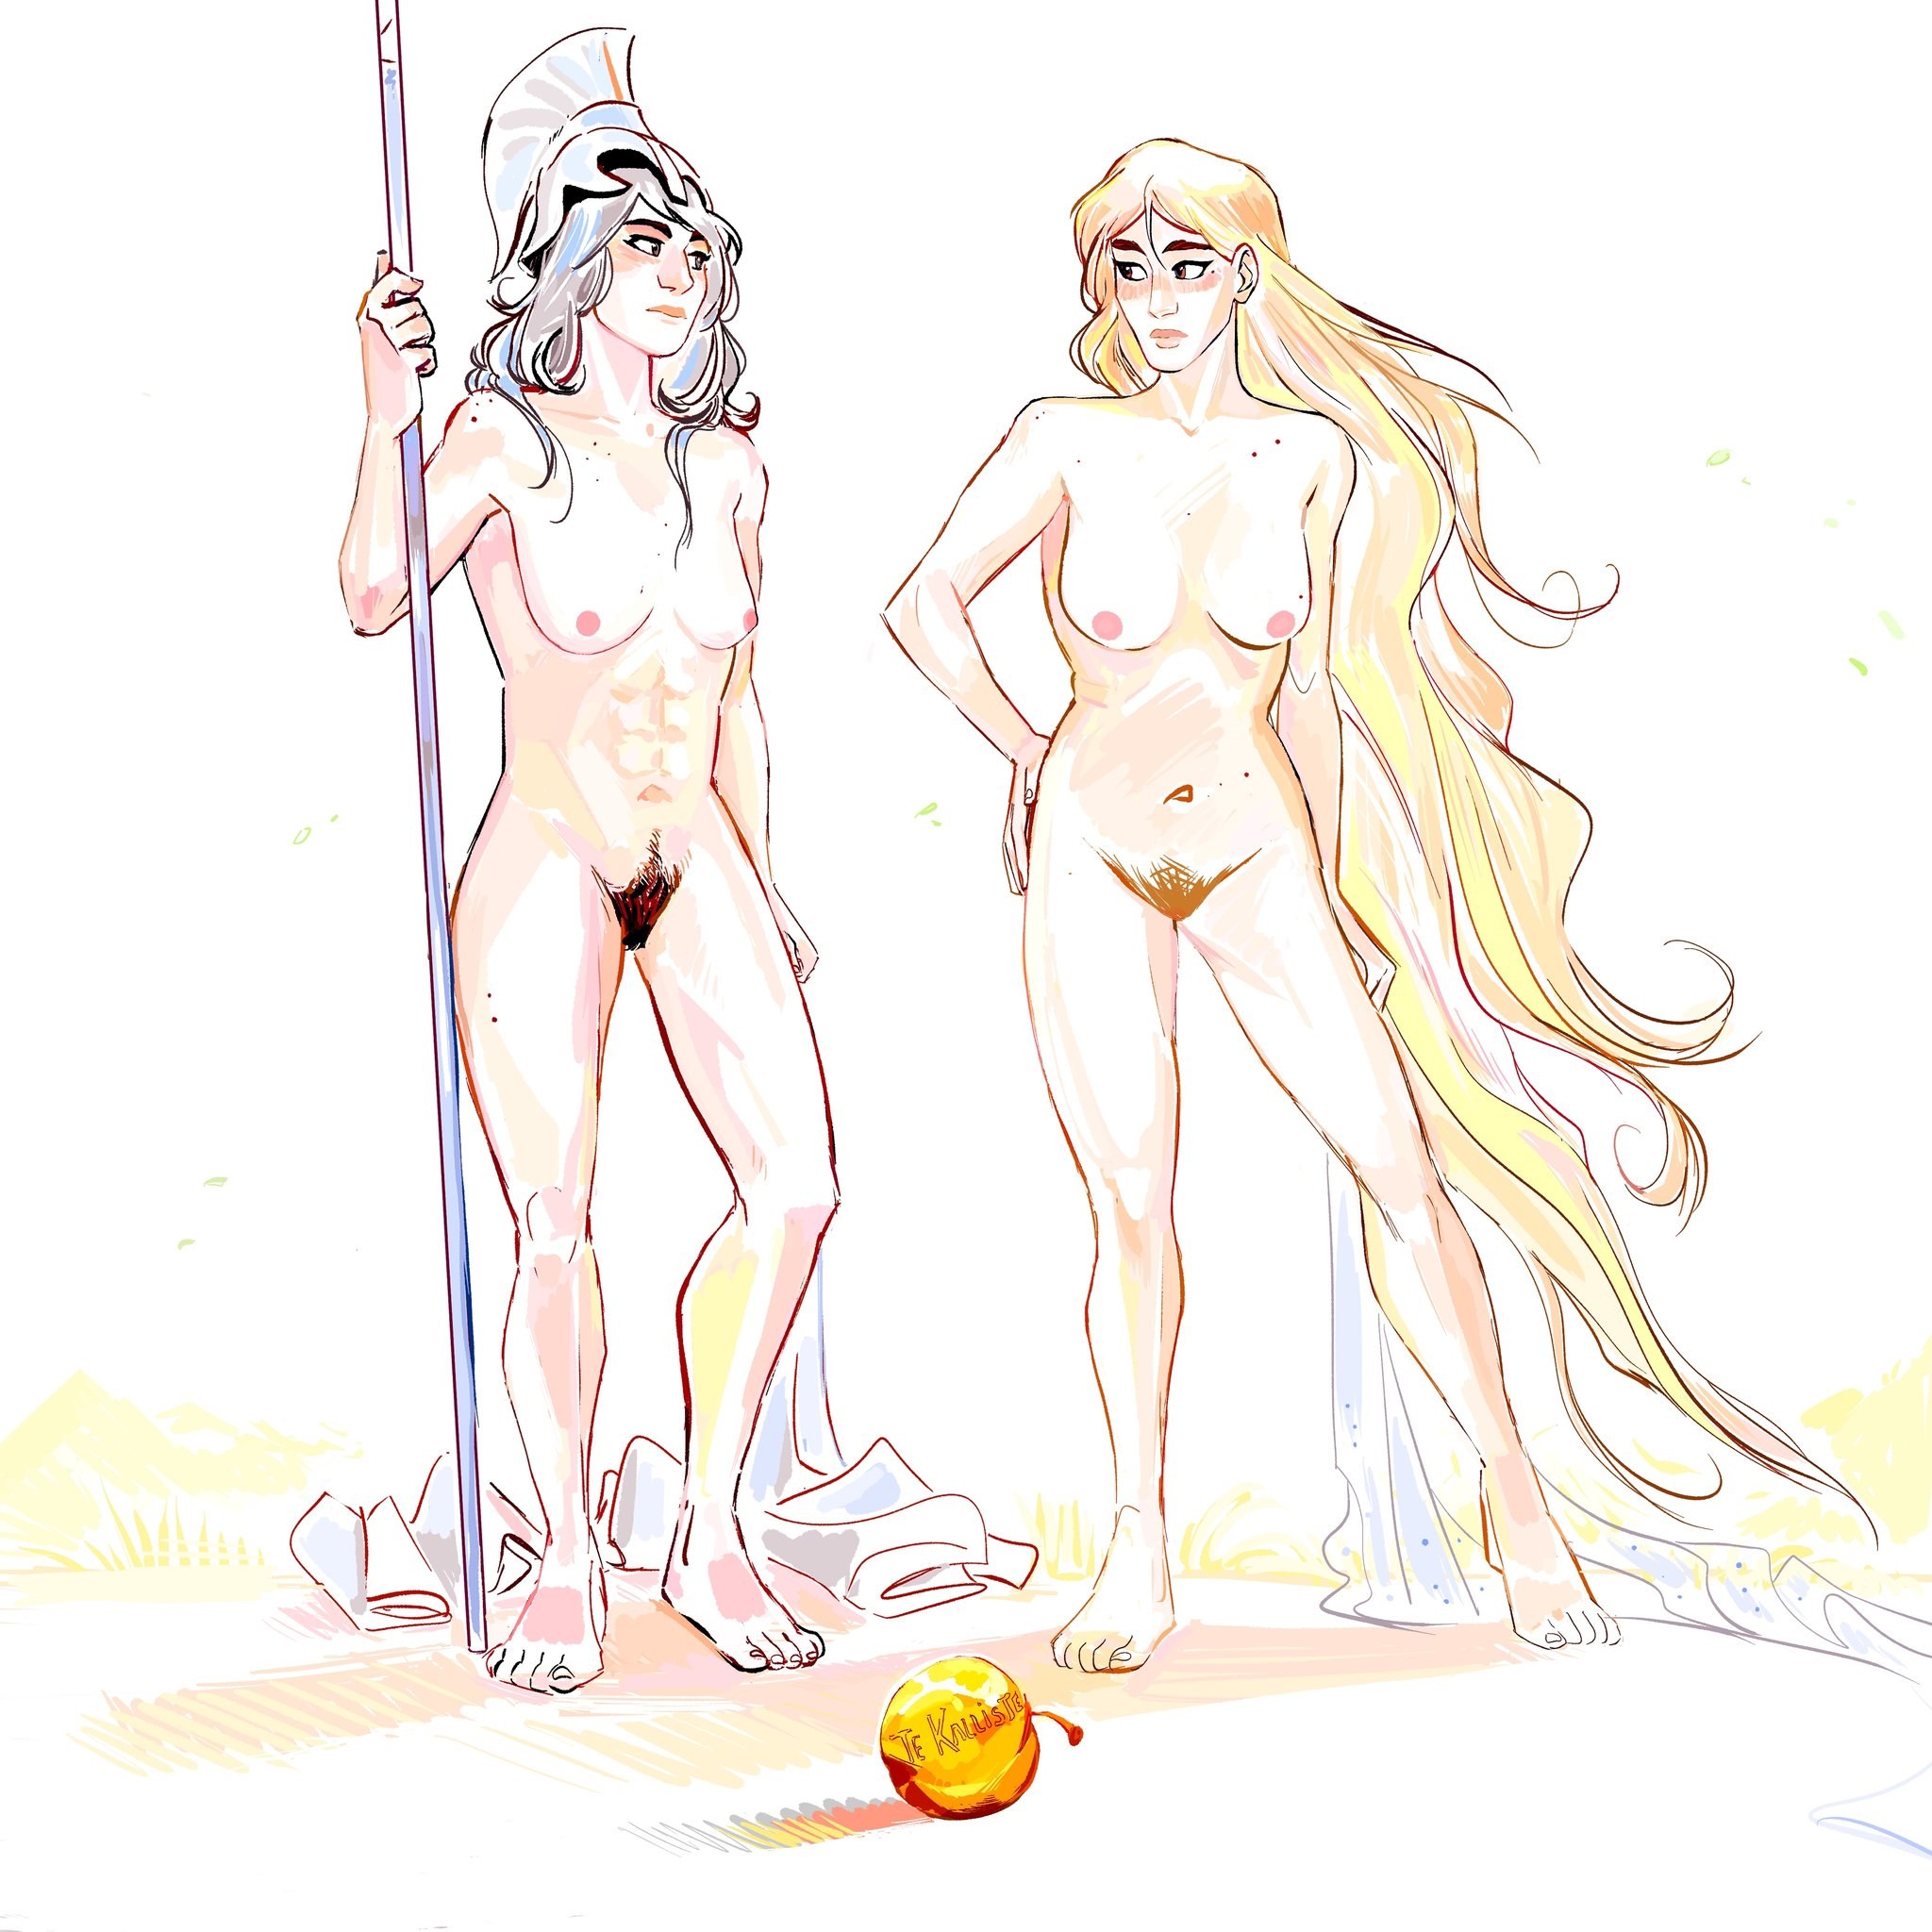 Mythology nudes